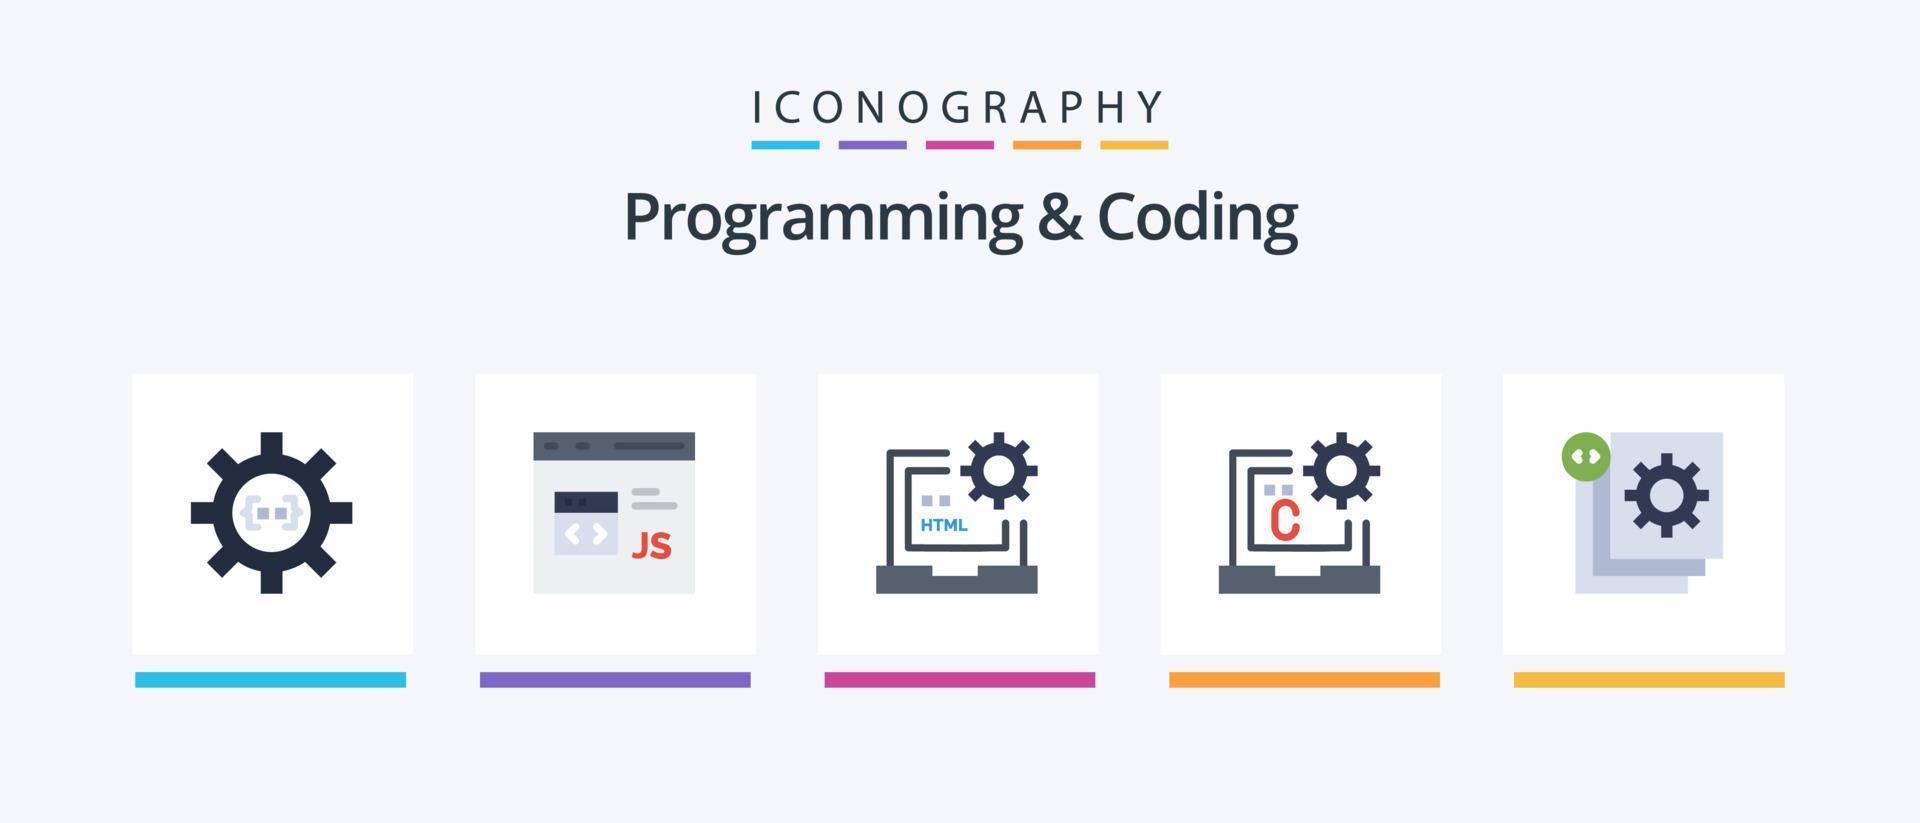 programmering en codering vlak 5 icoon pak inclusief codering. c. ontwikkeling. html. ontwikkelen. creatief pictogrammen ontwerp vector